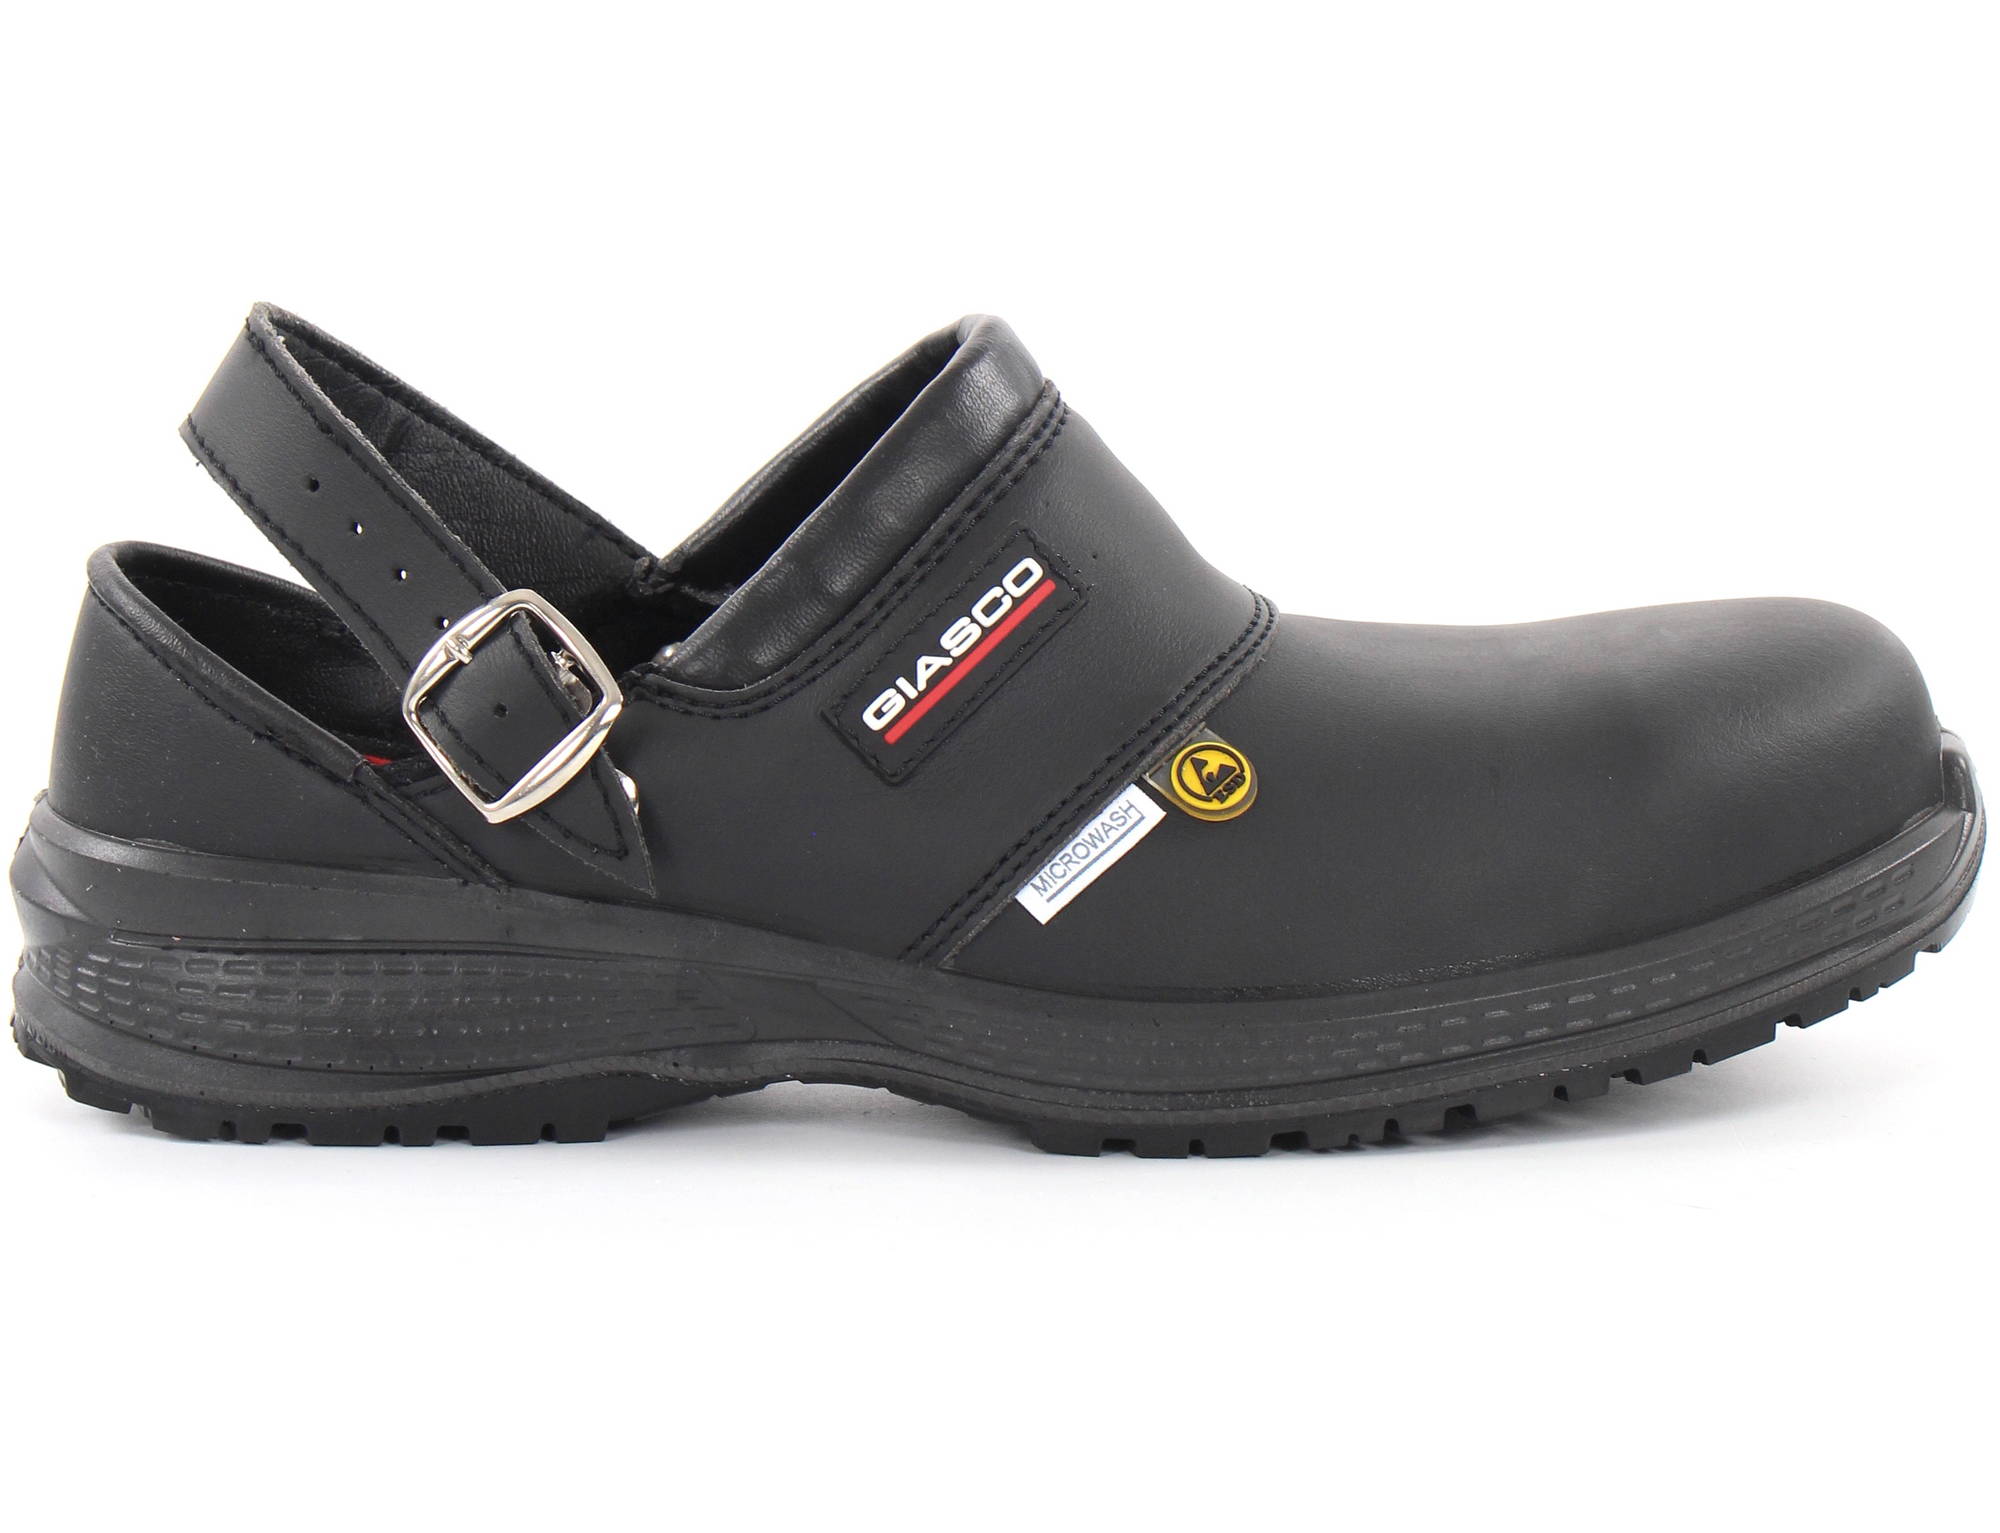 Giasco Safety Shoes Free Sb fo, Black - Stilettoshop.eu webstore